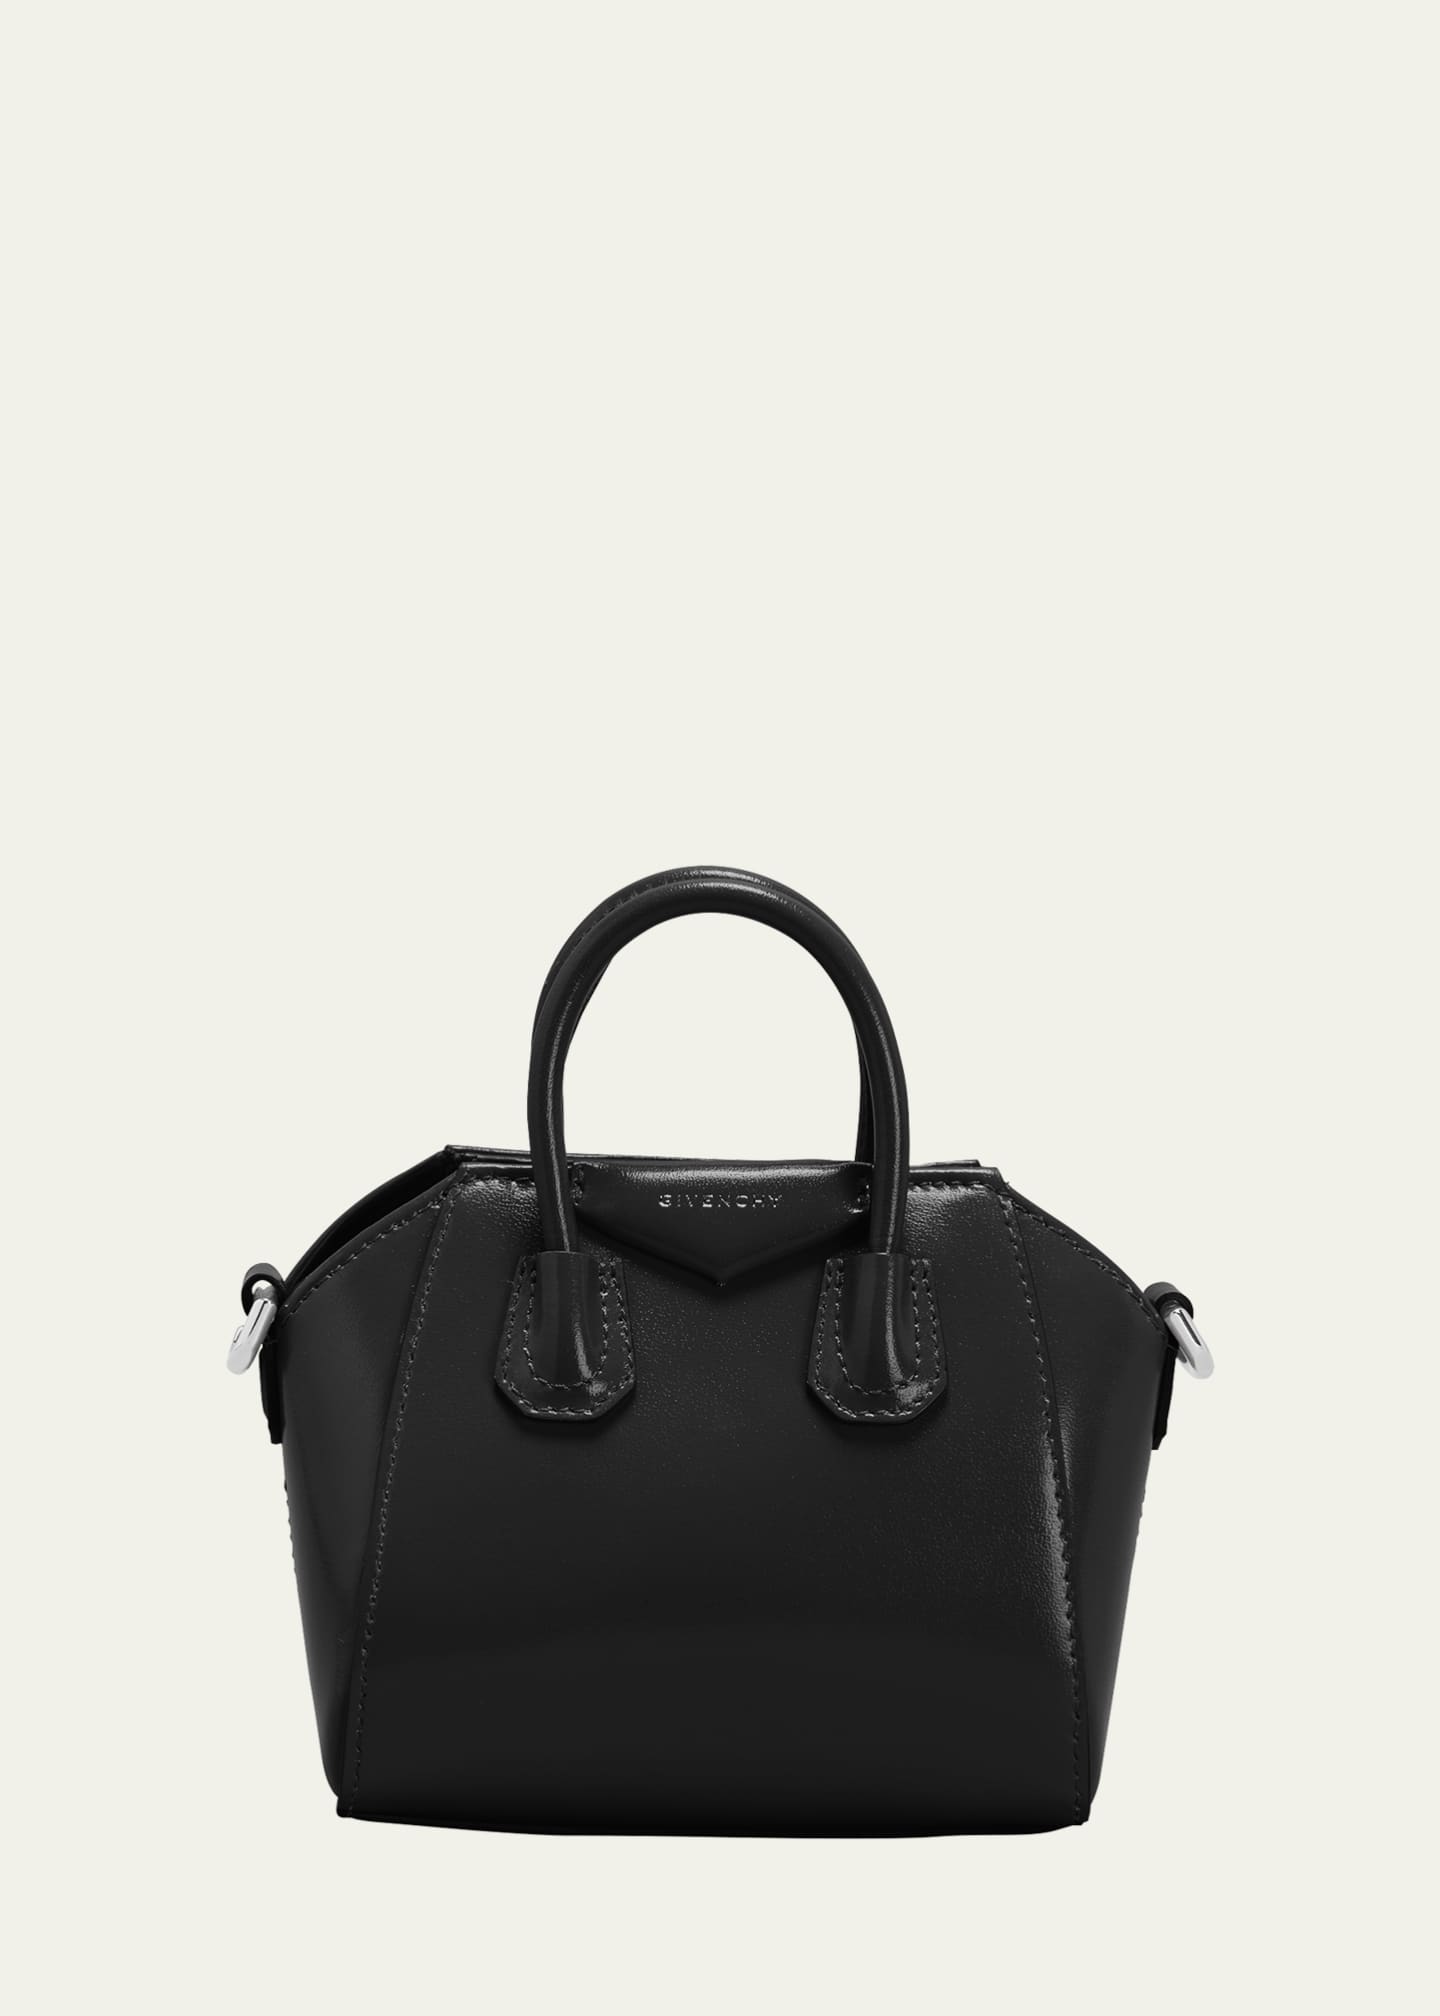 Givenchy Antigona Micro Leather Tote Bag in Black